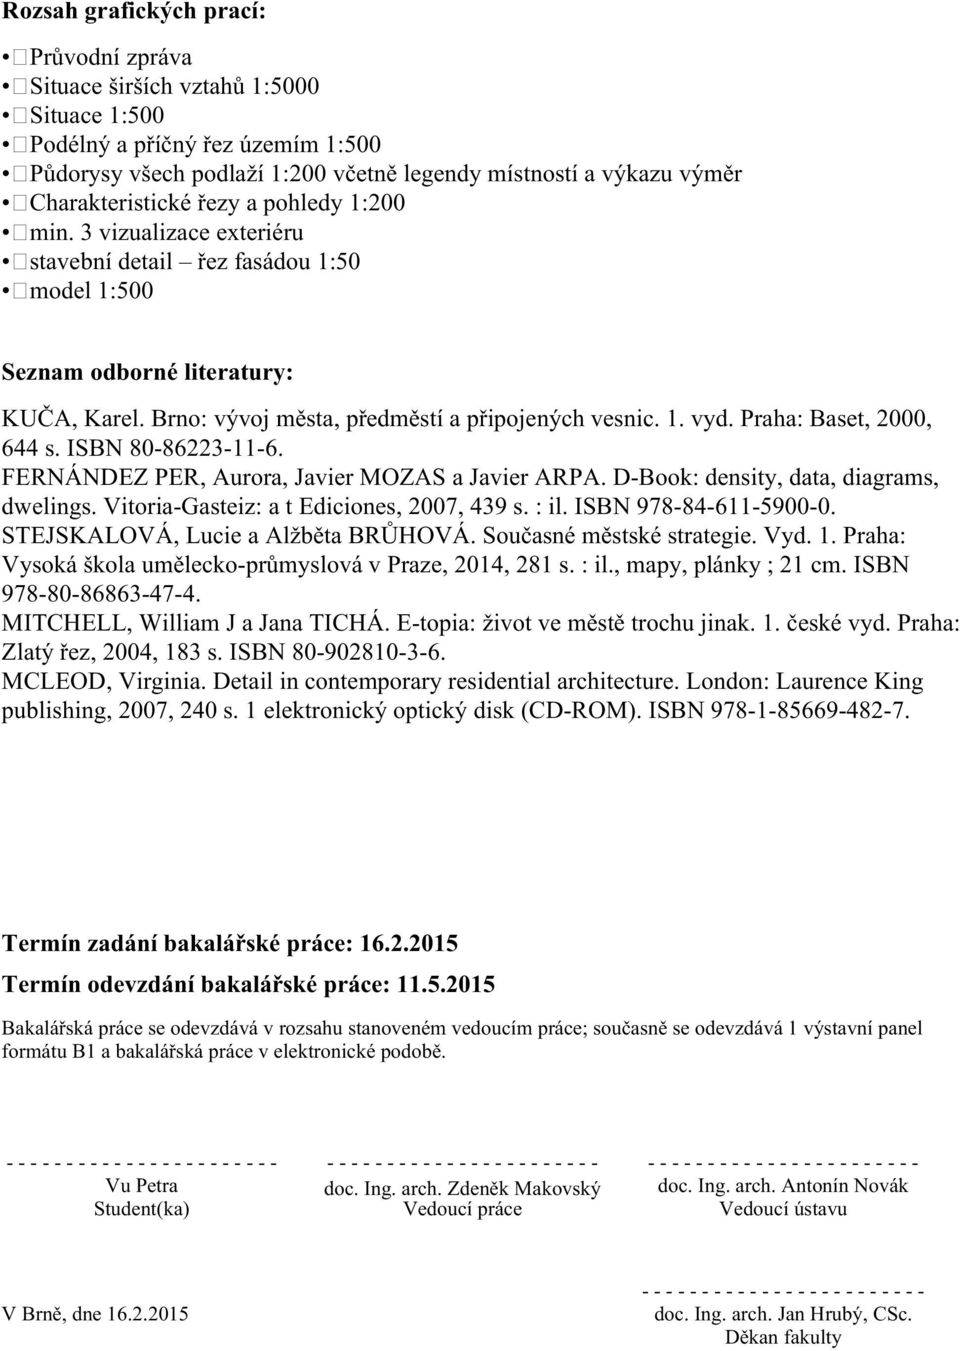 Brno: vývoj města, předměstí a připojených vesnic. 1. vyd. Praha: Baset, 2000, 644 s. ISBN 80-86223-11-6. FERNÁNDEZ PER, Aurora, Javier MOZAS a Javier ARPA. D-Book: density, data, diagrams, dwelings.